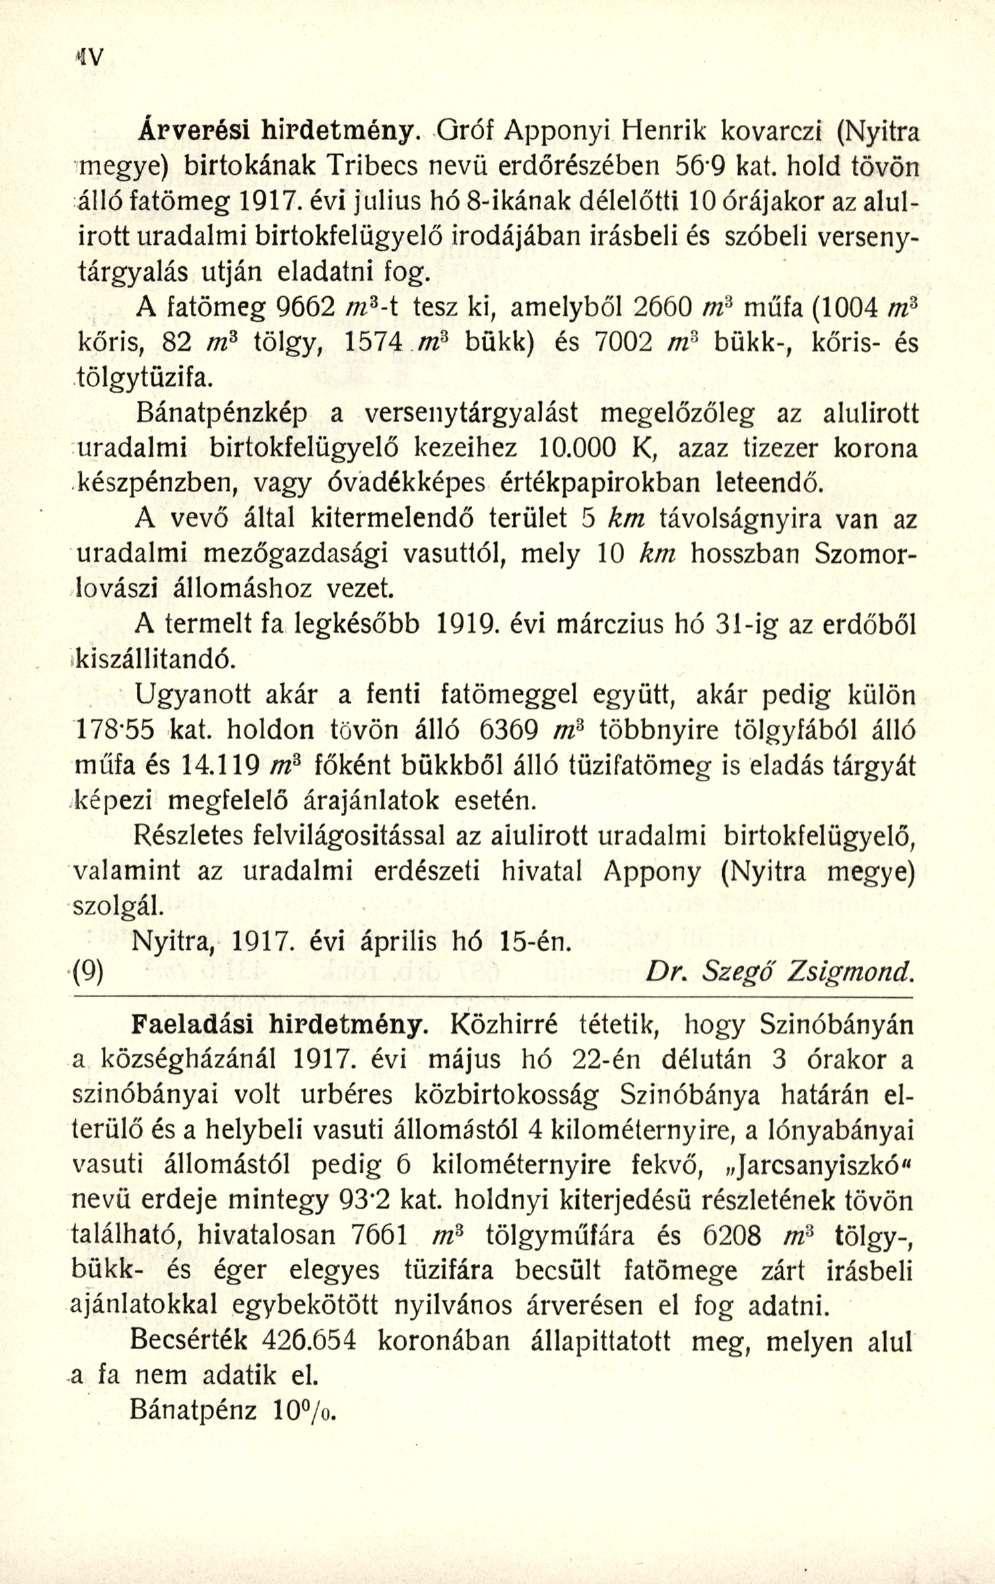 Árverési hirdetmény. Gróf Apponyi Henrik kovarczi (Nyitra megye) birtokának Tribecs nevü erdőrészében 569 kat. hold tövön álló fatömeg 1917.